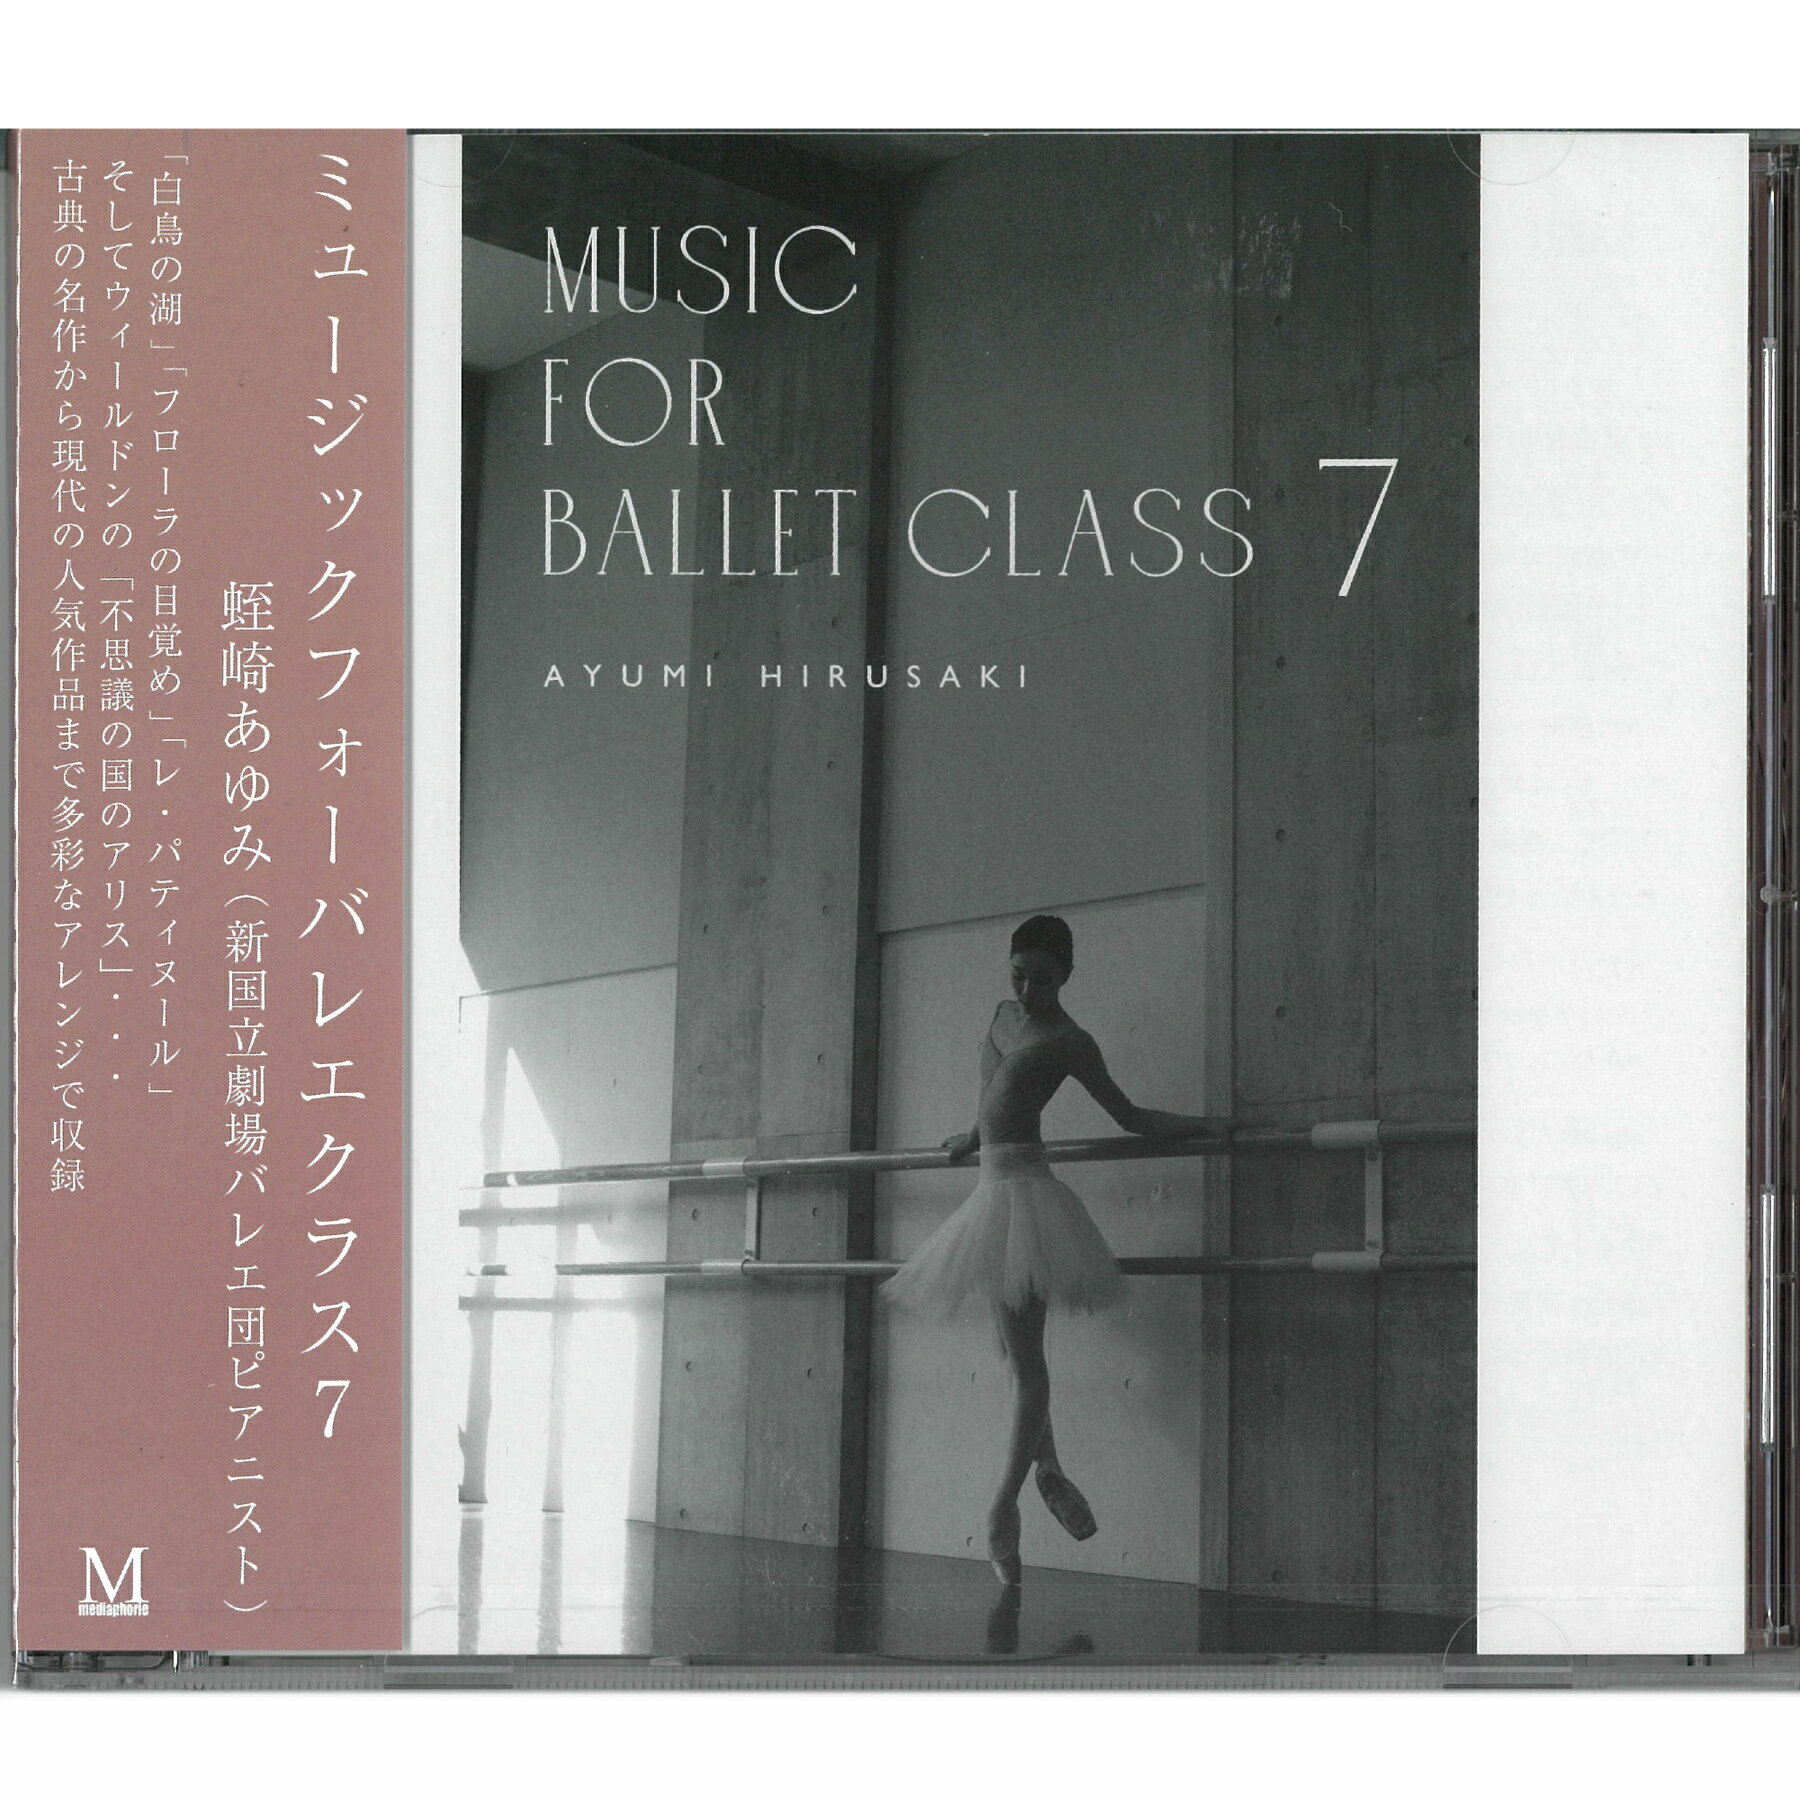 【チャコット 公式(chacott)】【CD】蛭崎あゆみ「Music for Ballet Class Vol.7」[AH07]